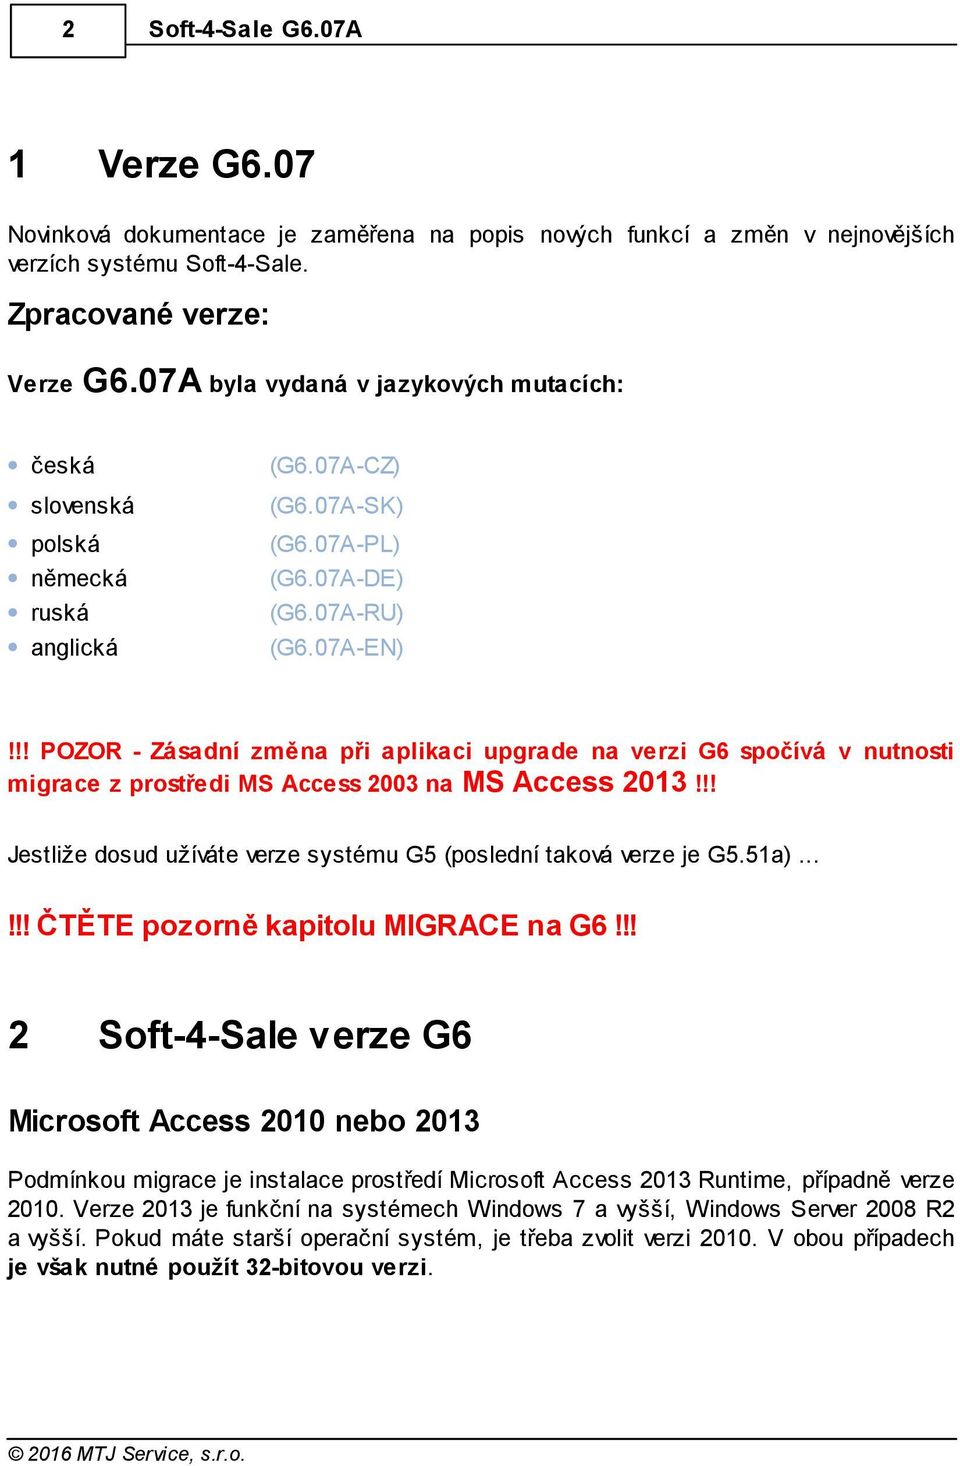 !! POZOR - Zásadní změna při aplikaci upgrade na verzi G6 spočívá v nutnosti migrace z prostředi MS Access 2003 na MS Access 2013!!! Jestliže dosud užíváte verze systému G5 (poslední taková verze je G5.